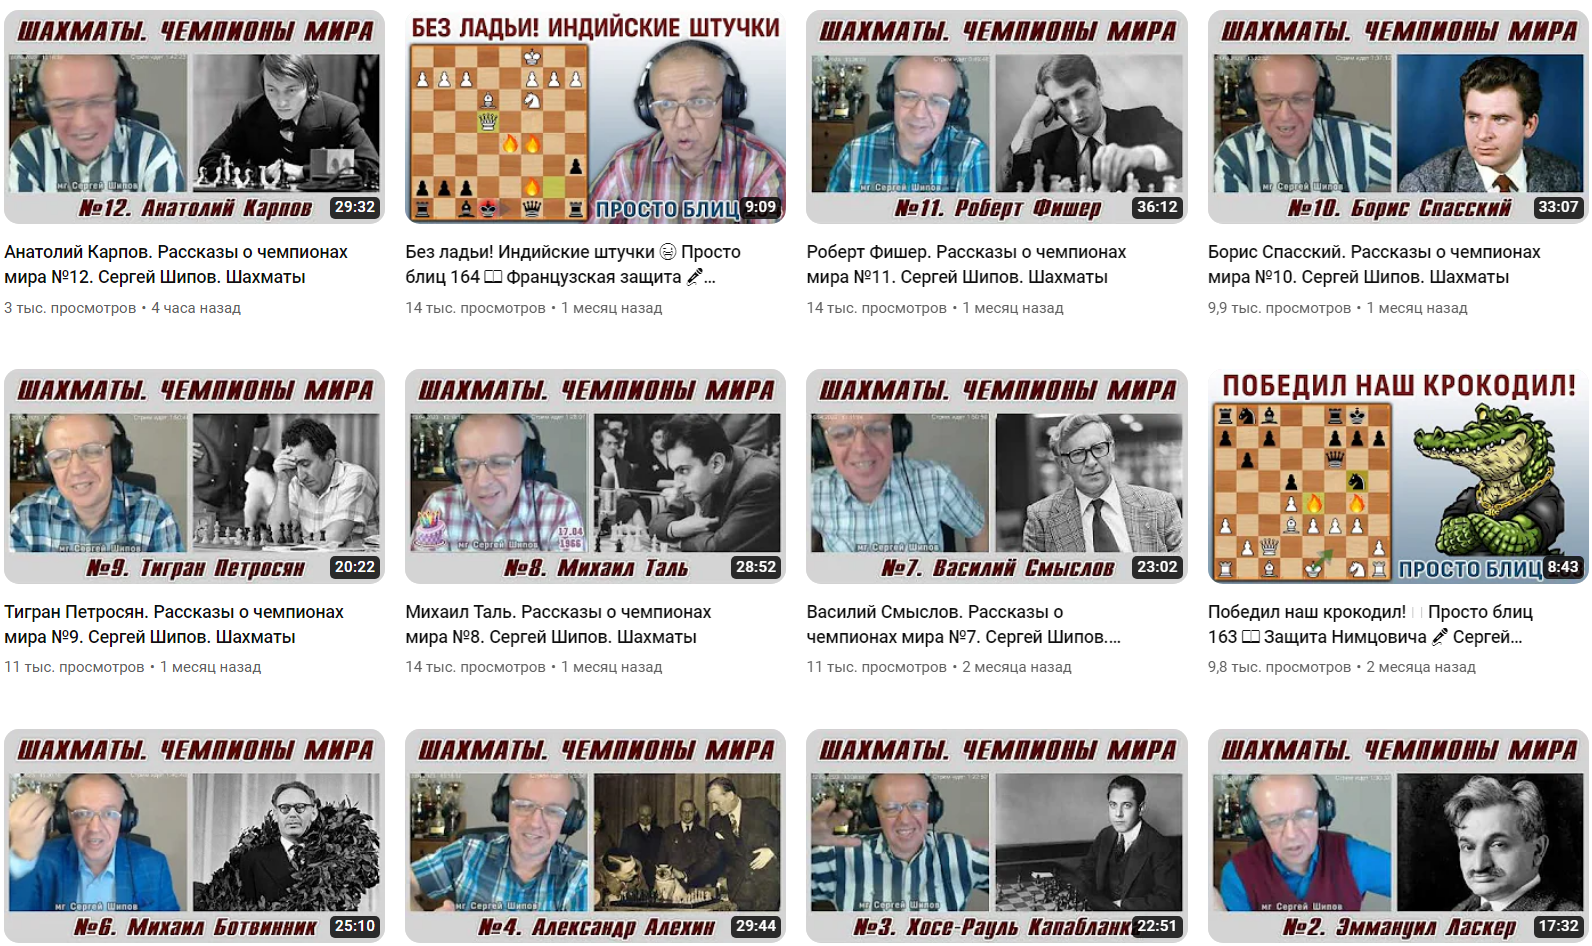 Гроссмейстер Сергей Шипов, пионер и самый популярный комментатор шахмат на русском языке, рассказывает Вам о партиях сильнейших гроссмейстеров мира.